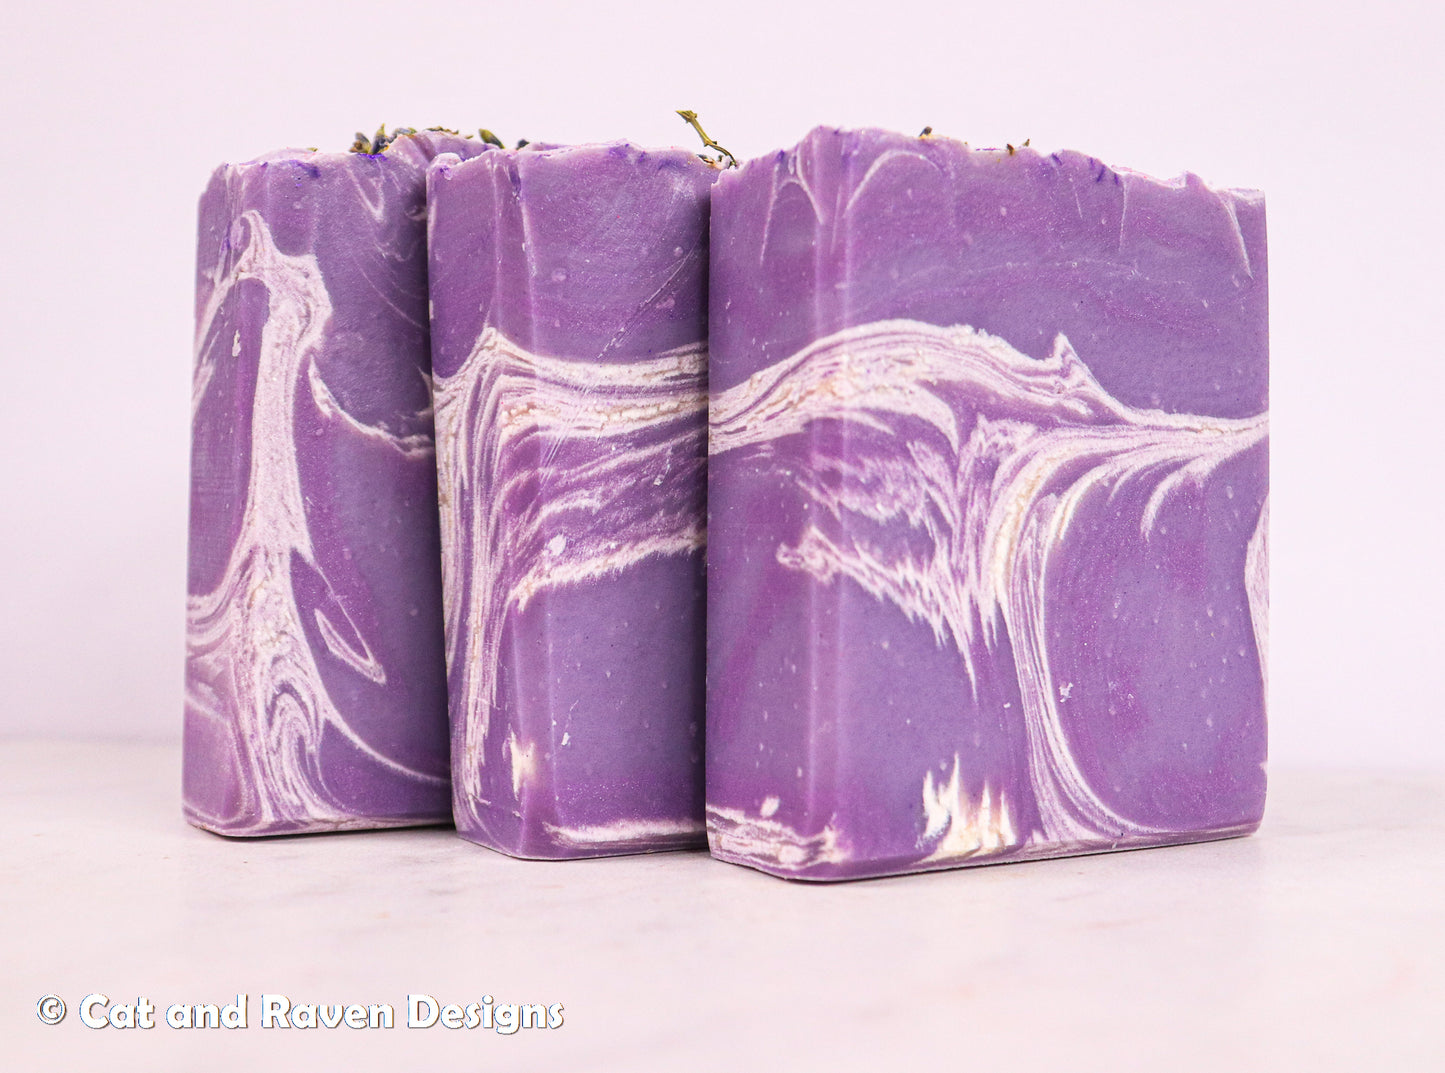 Lavender Fields Forever soap